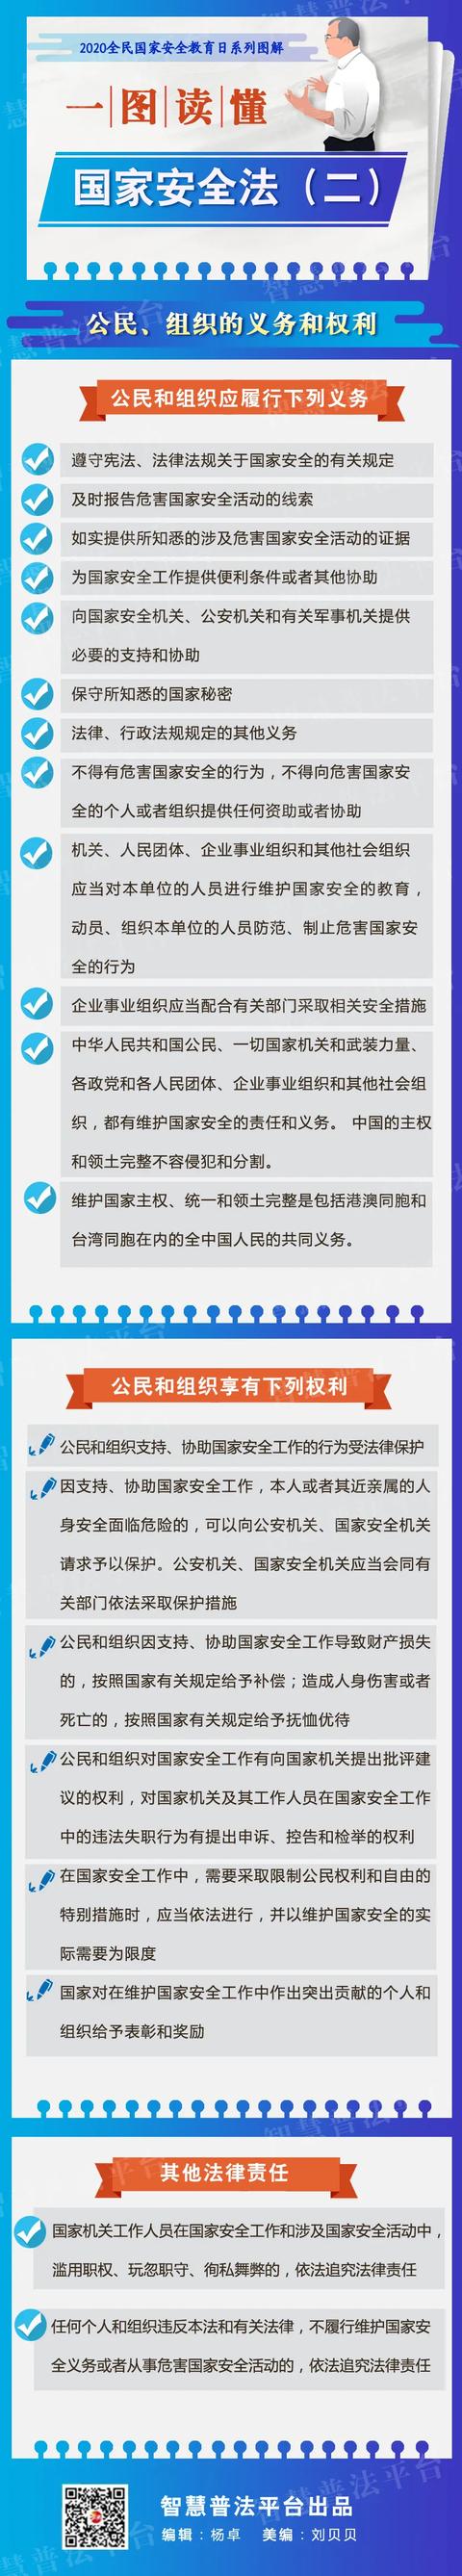 【4•15】一图读懂|中华人民共和国国家安全法